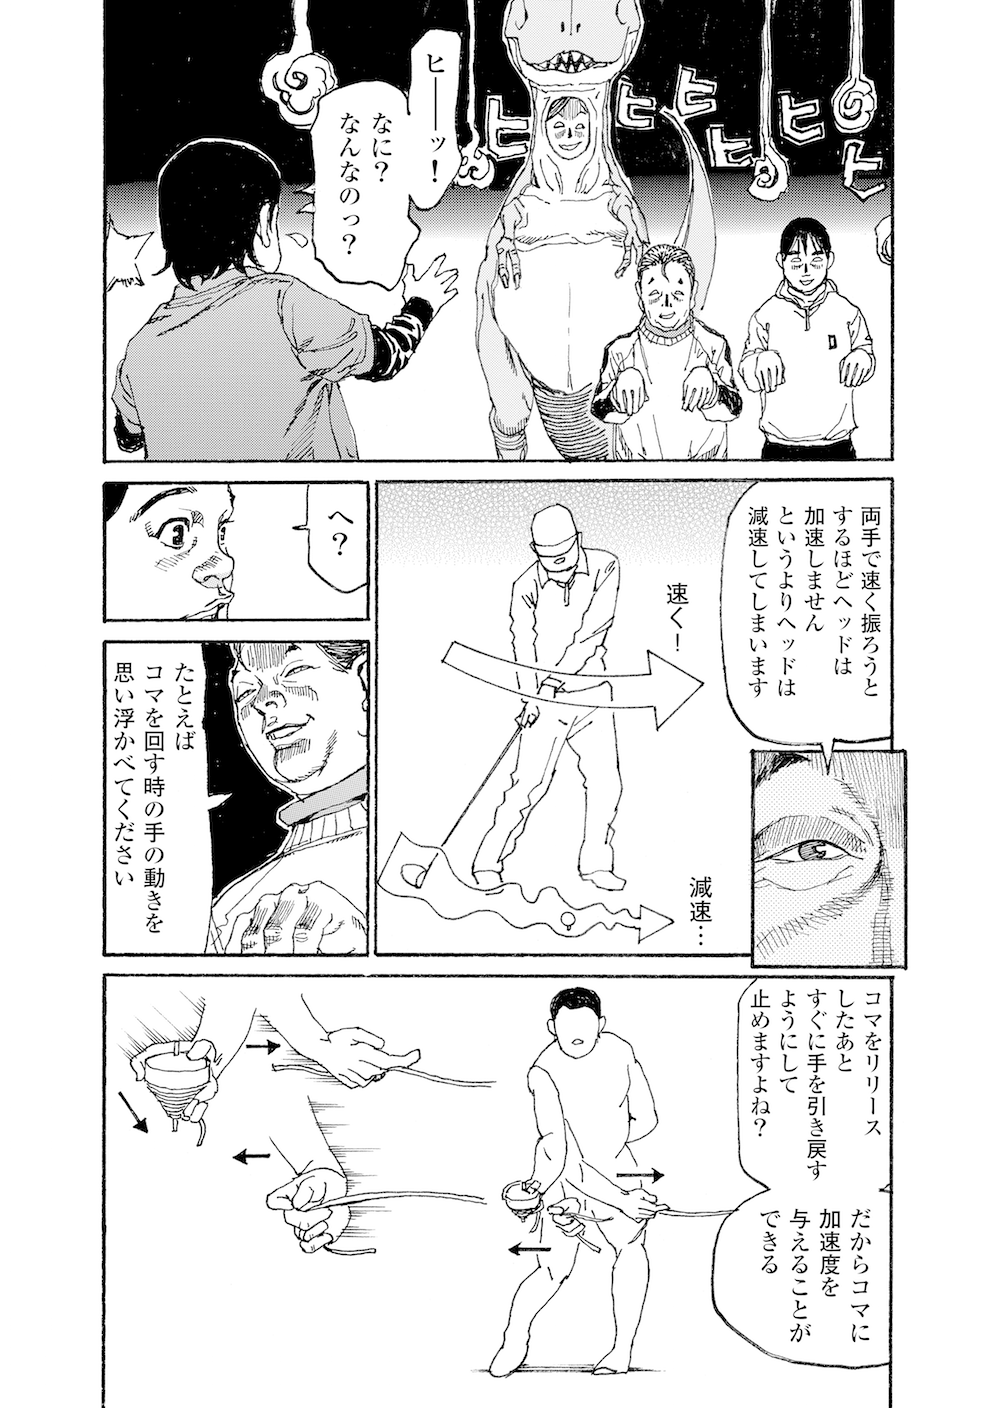 第12話 シャフトを逆しなりさせるには 無料で読めるゴルフレッスンコミックweb 日本文芸社